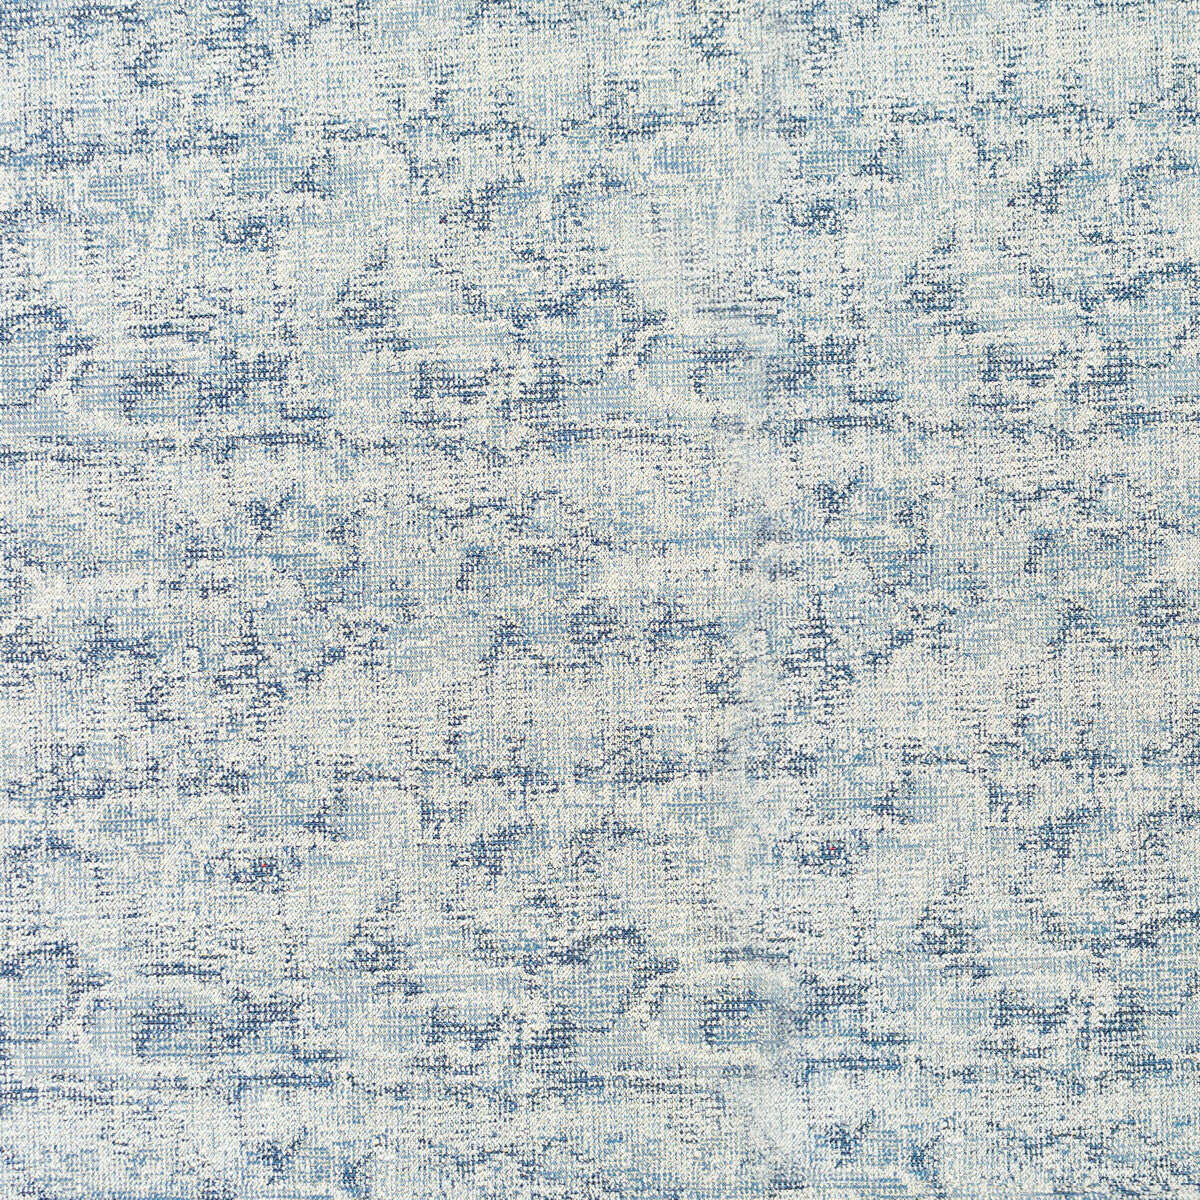 Carbonero fabric in azul color - pattern LCT1049.002.0 - by Gaston y Daniela in the Lorenzo Castillo VI collection